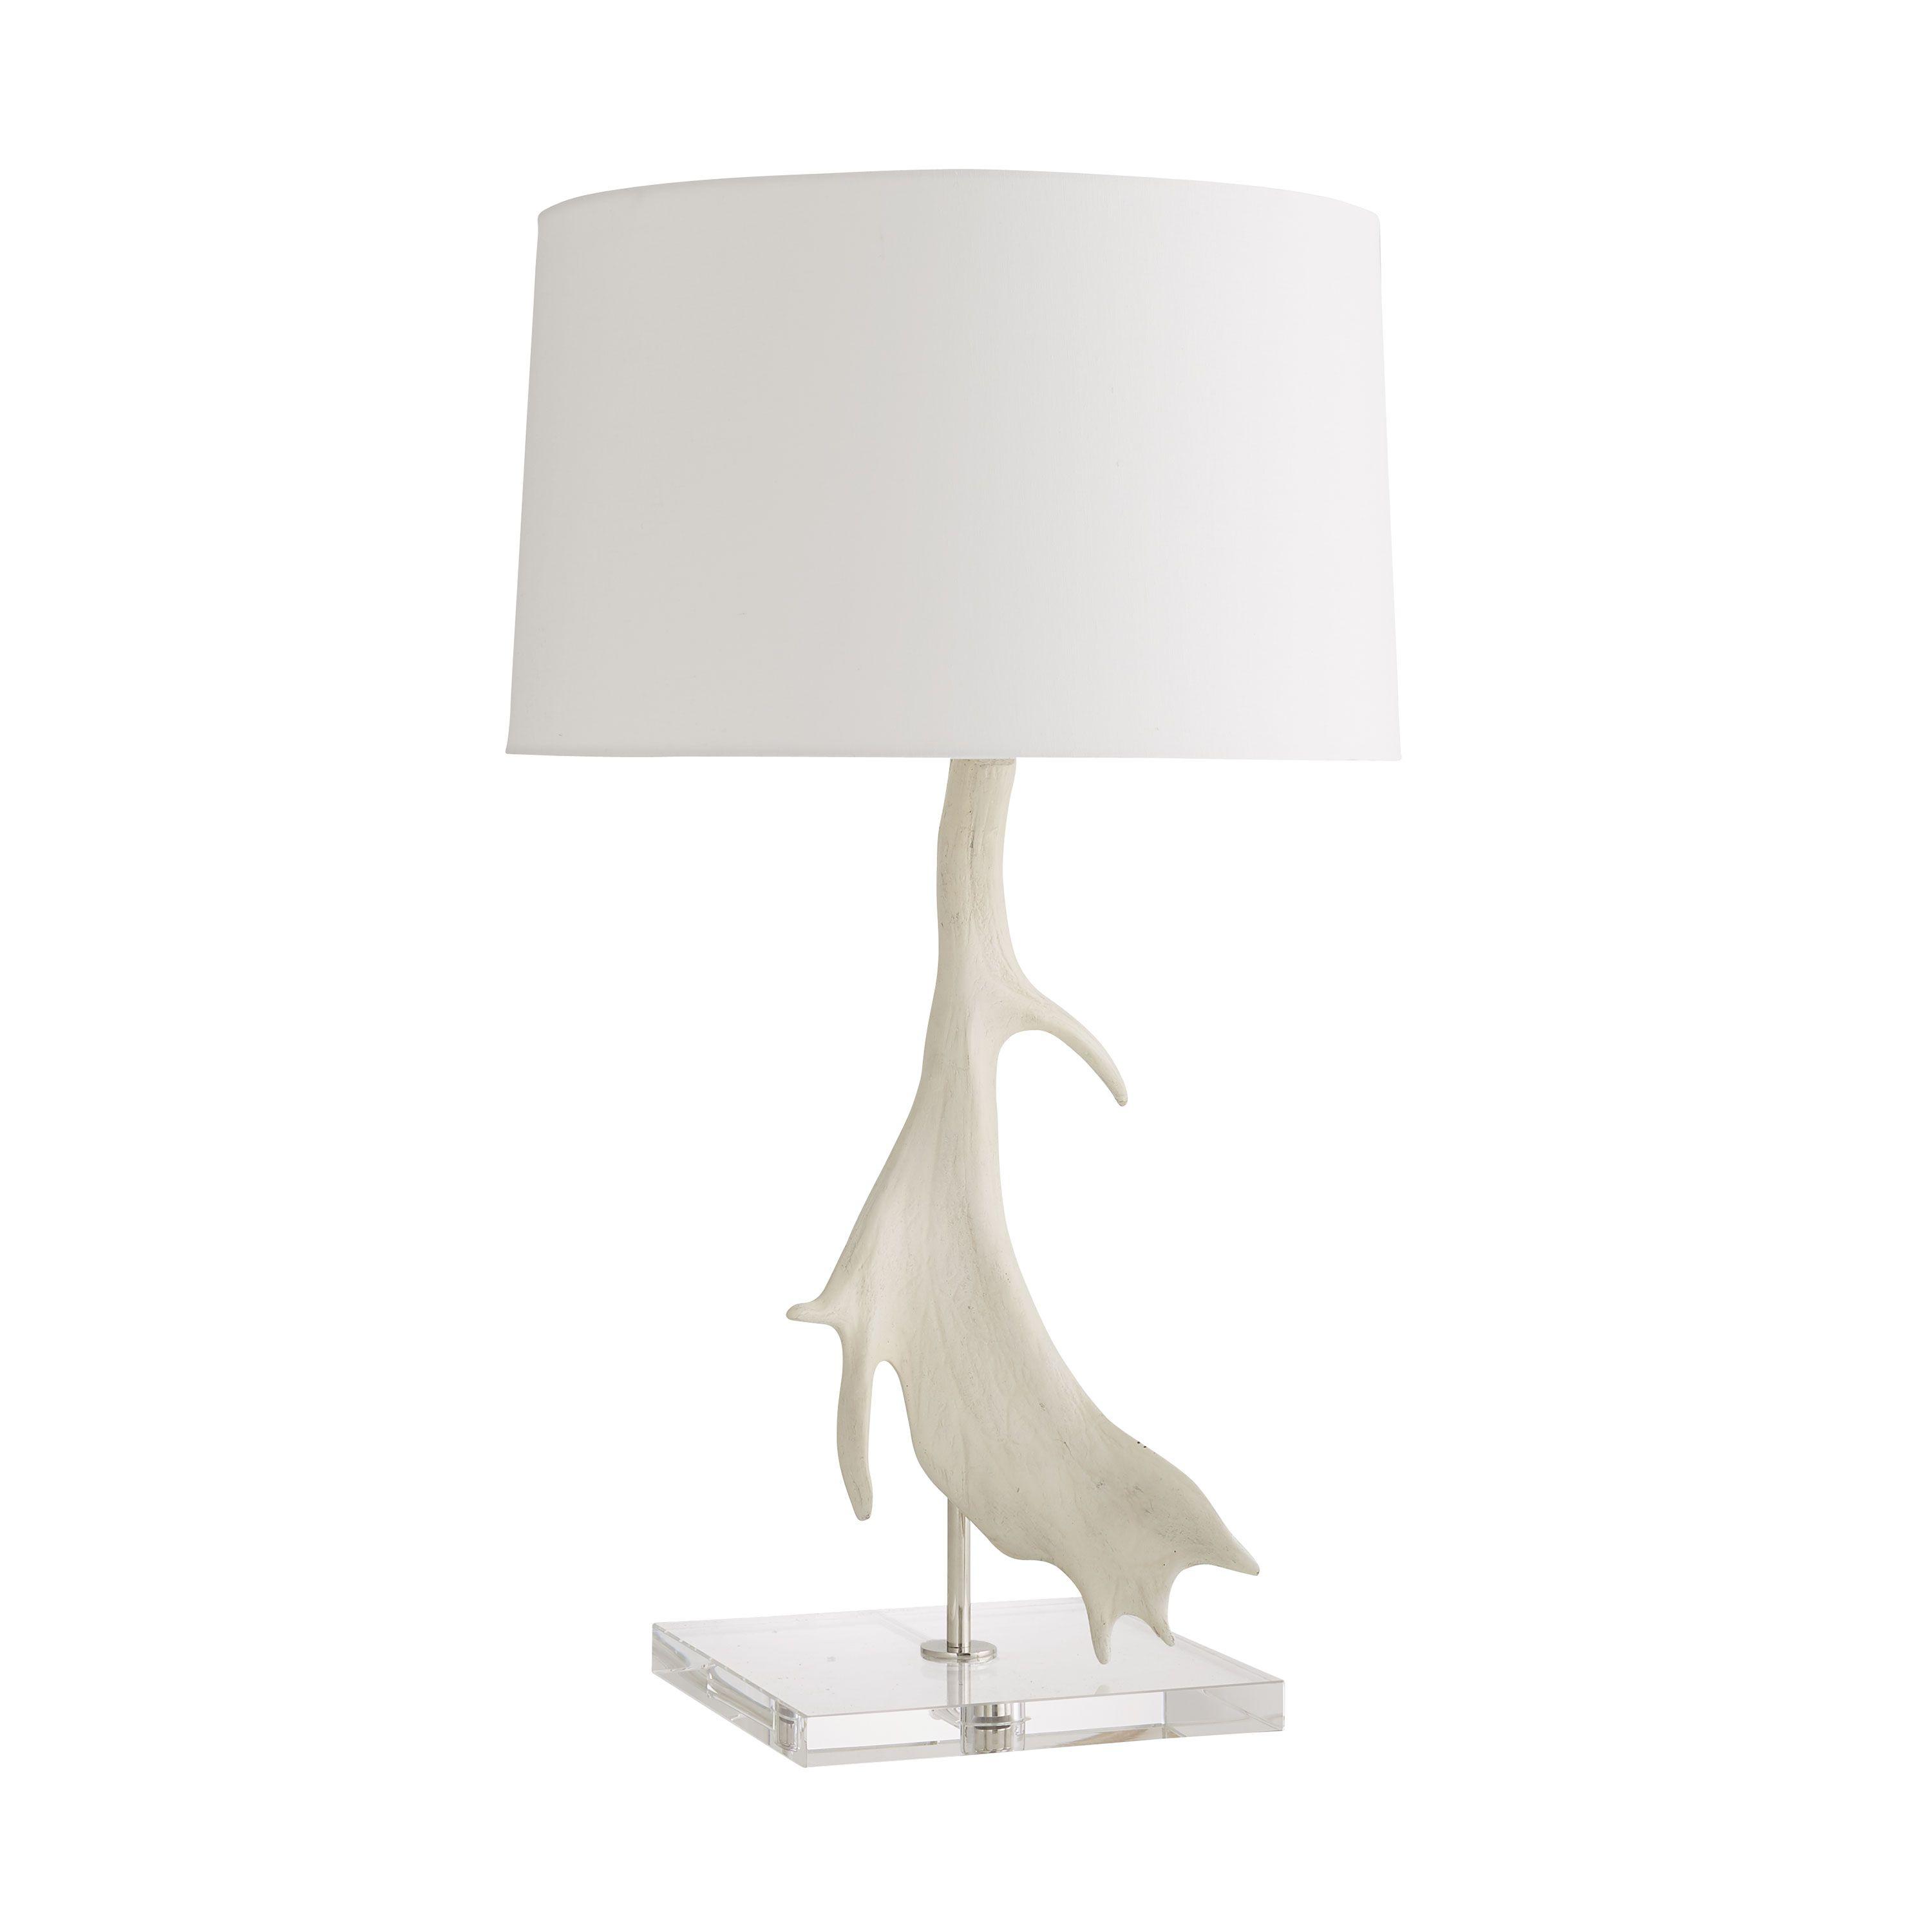 Купить Настольная лампа Jackson Lamp в интернет-магазине roooms.ru